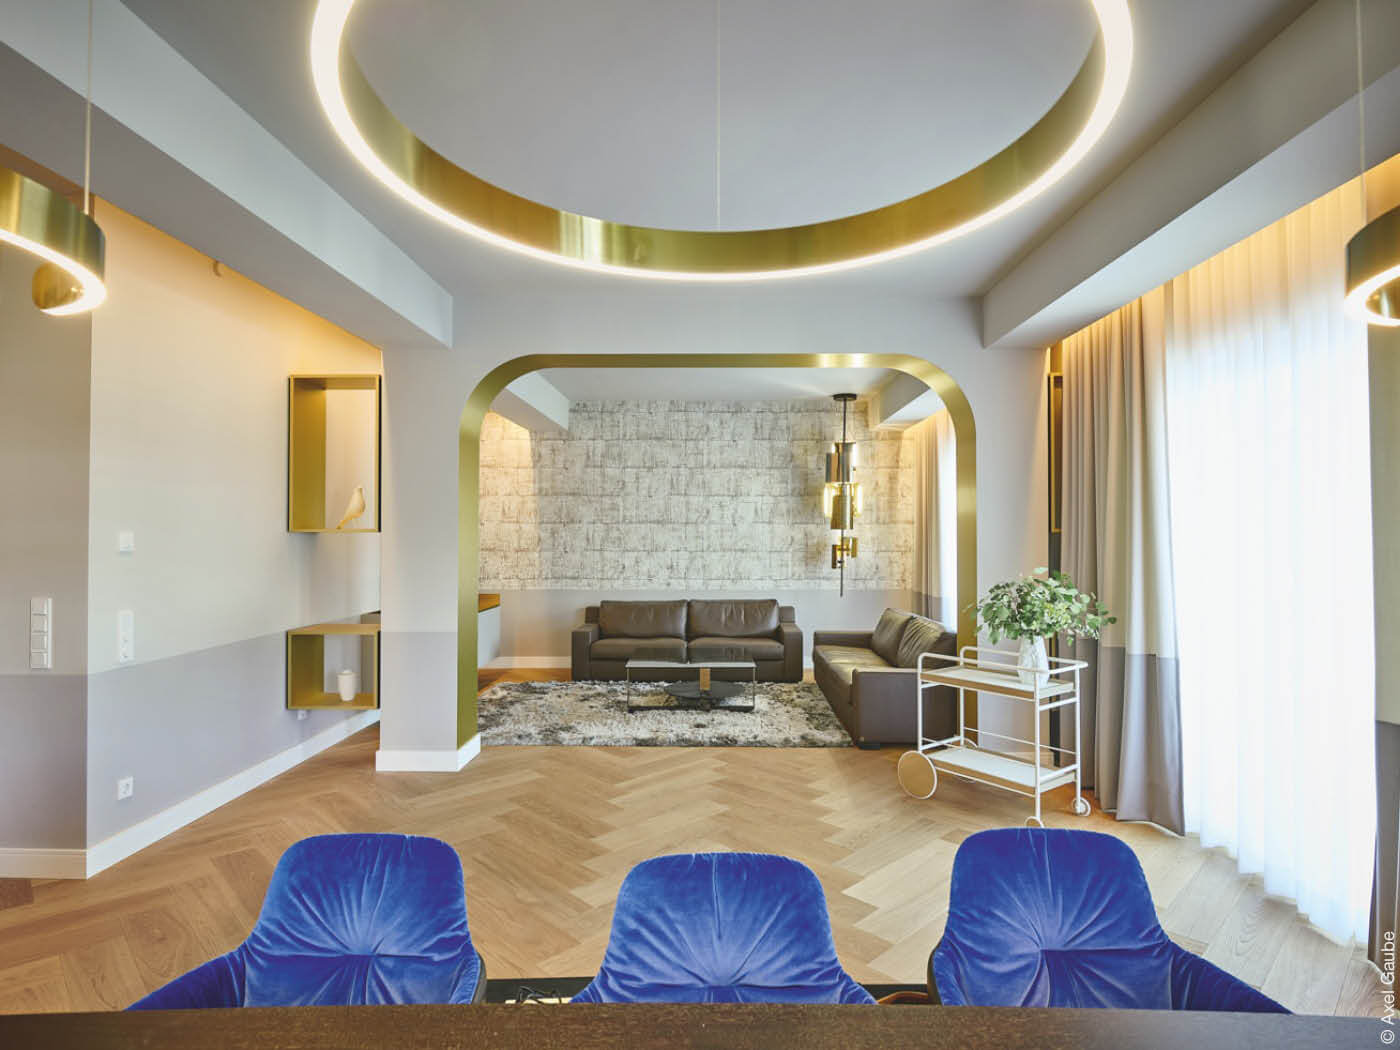 Wohnzimmer mit goldenen Applikationen und blauen Sesseln